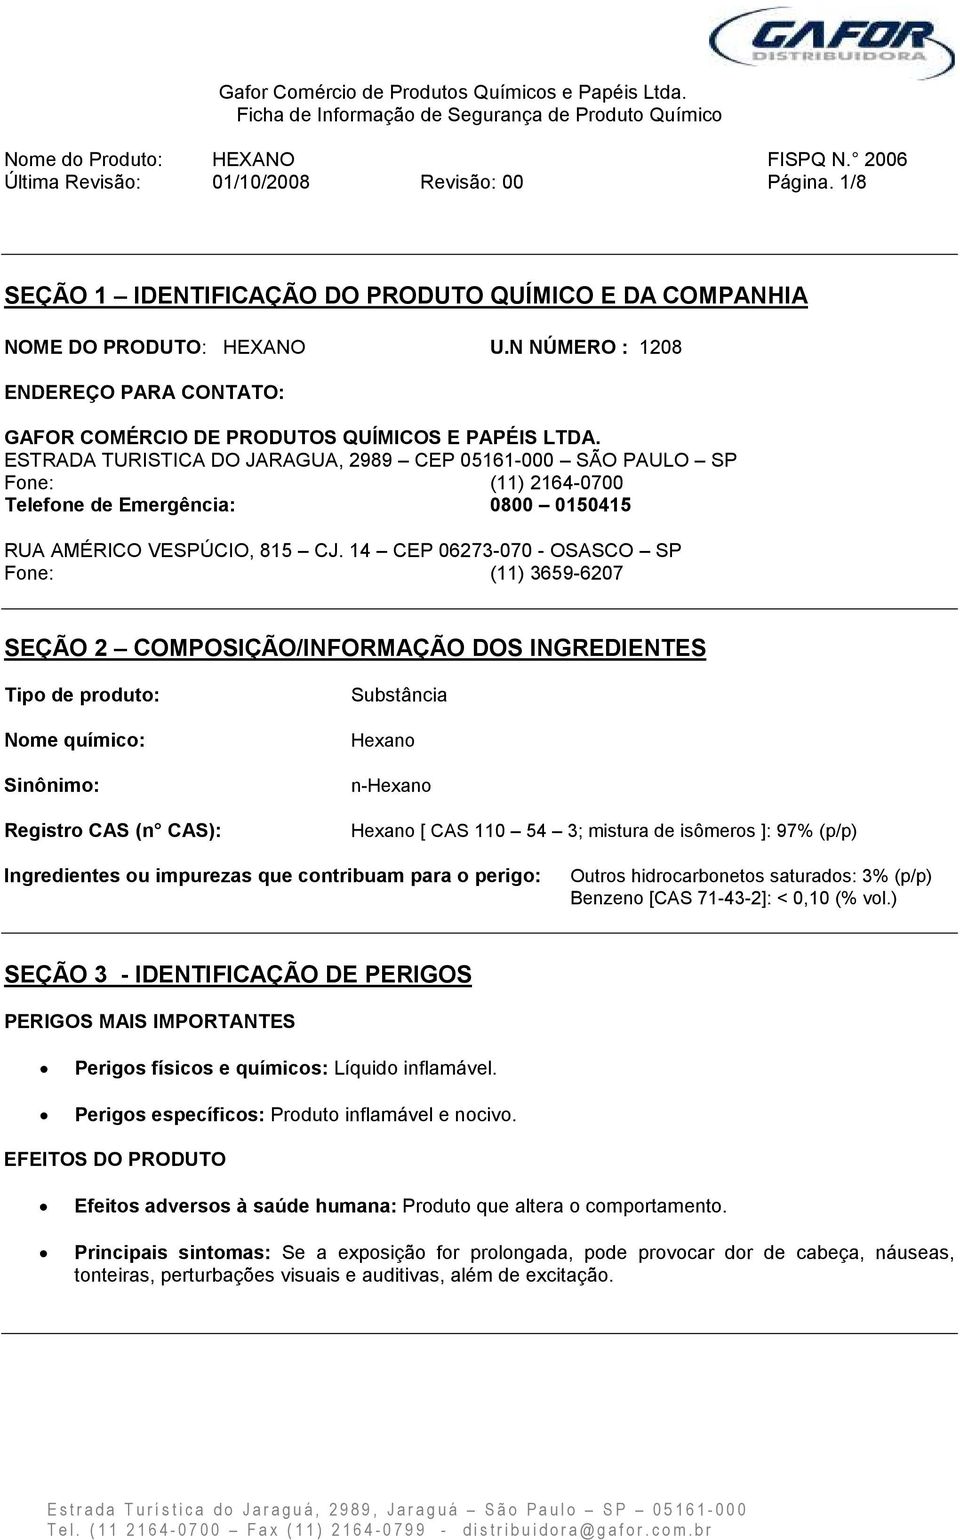 ESTRADA TURISTICA DO JARAGUA, 2989 CEP 05161-000 SÃO PAULO SP Fone: (11) 2164-0700 Telefone de Emergência: 0800 0150415 RUA AMÉRICO VESPÚCIO, 815 CJ.